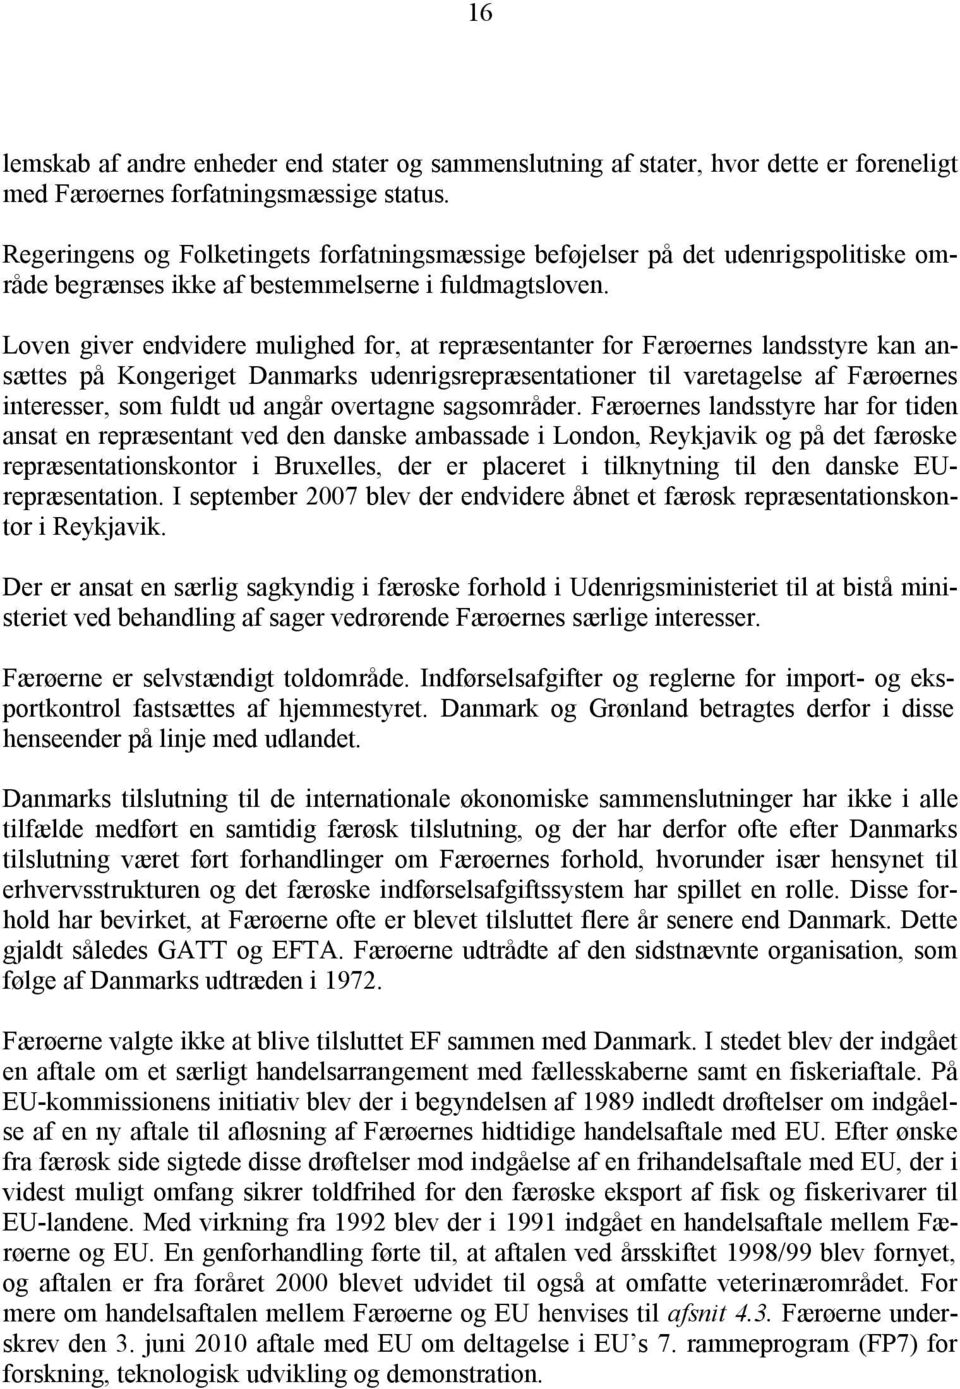 Loven giver endvidere mulighed for, at repræsentanter for Færøernes landsstyre kan ansættes på Kongeriget Danmarks udenrigsrepræsentationer til varetagelse af Færøernes interesser, som fuldt ud angår